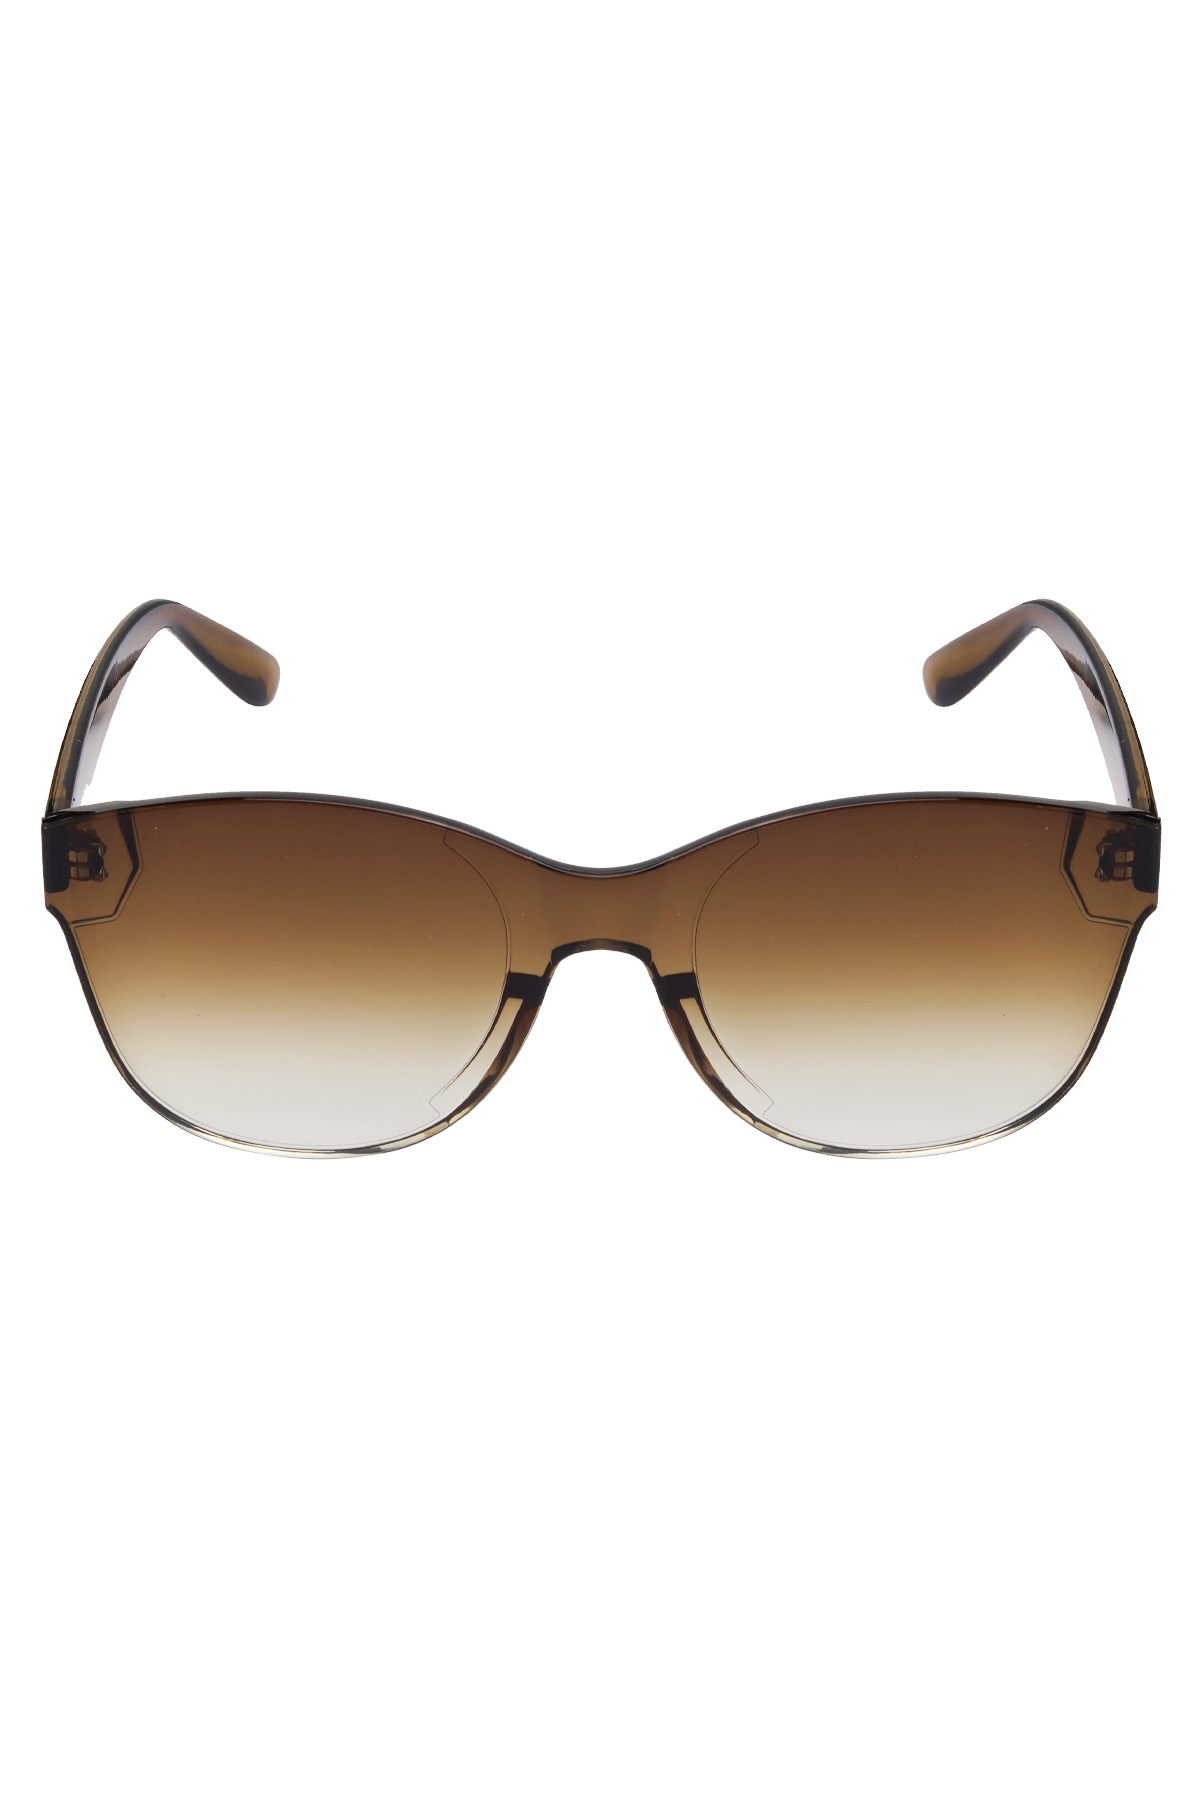 Einfarbige trendige Sonnenbrille - braun h5 Bild5